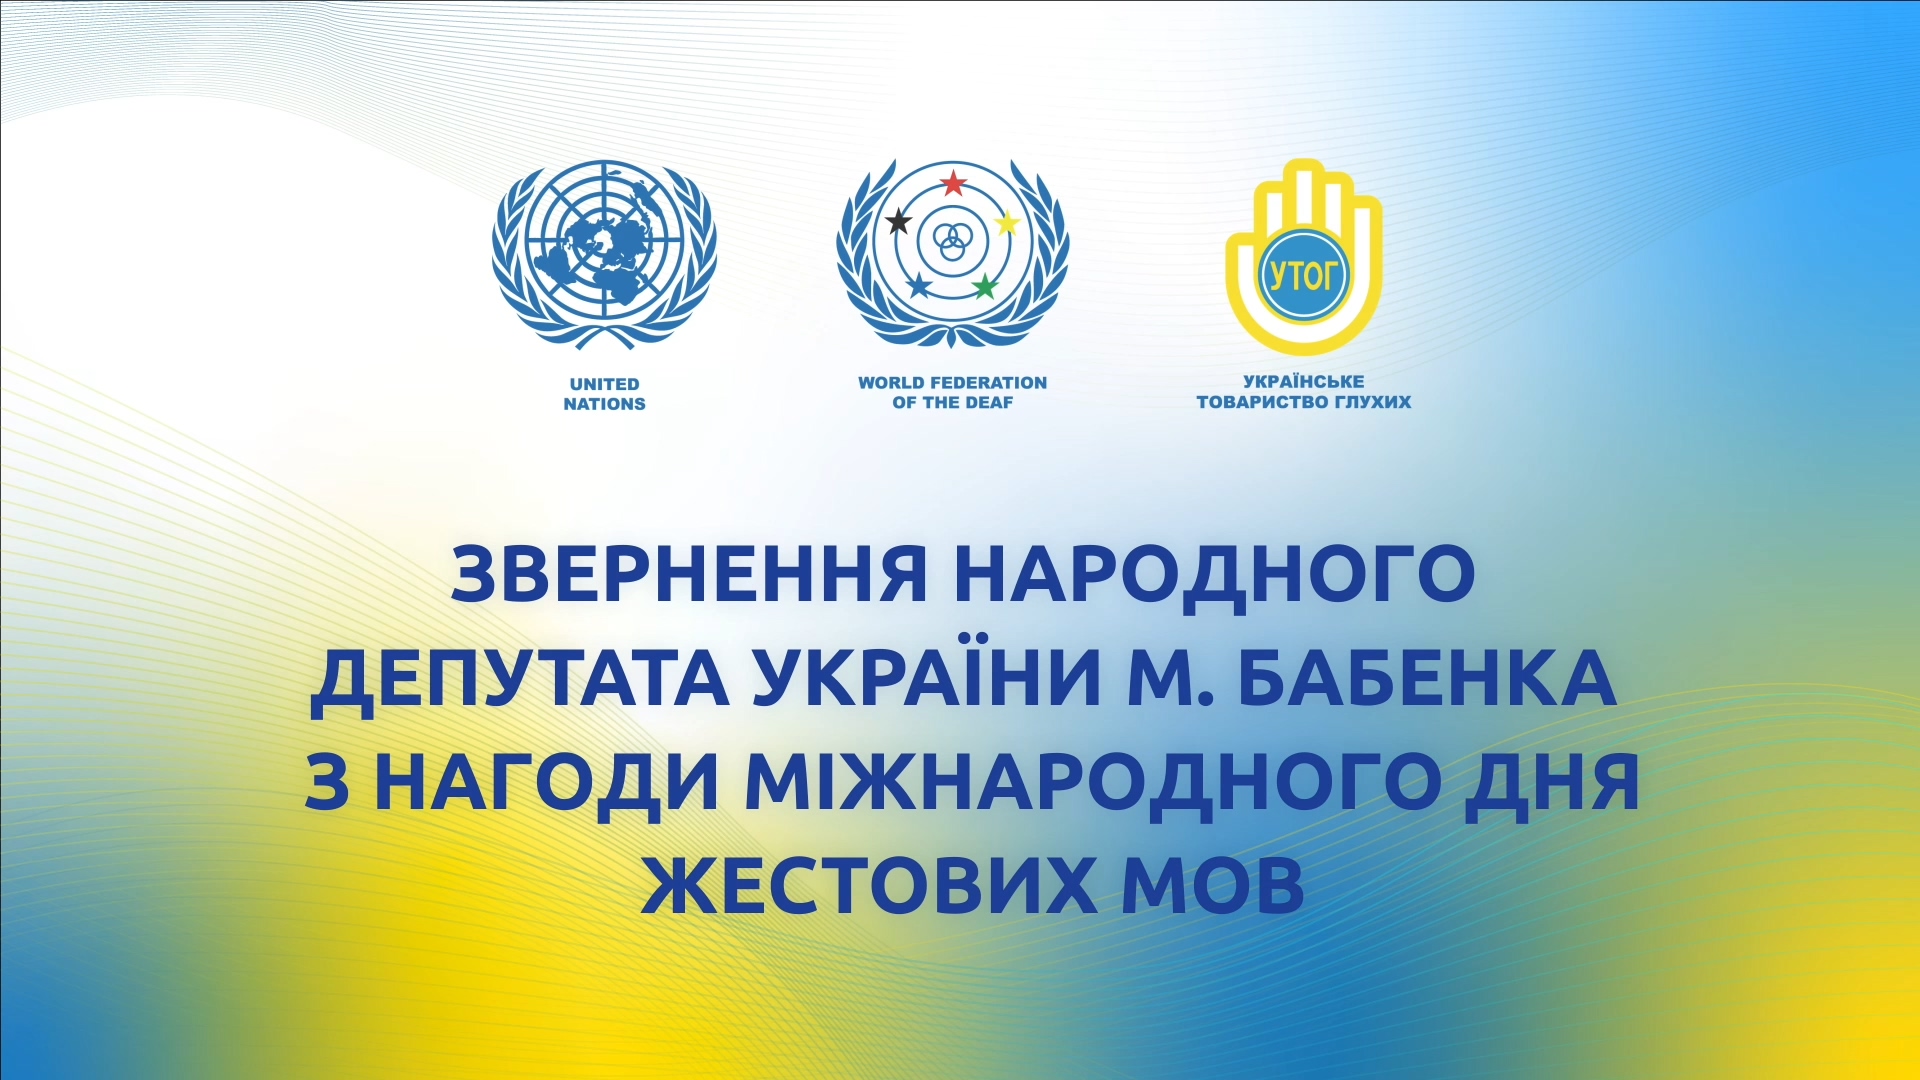 Звернення народного депутата України М. Бабенка з нагоди Міжнародного дня жестових мов